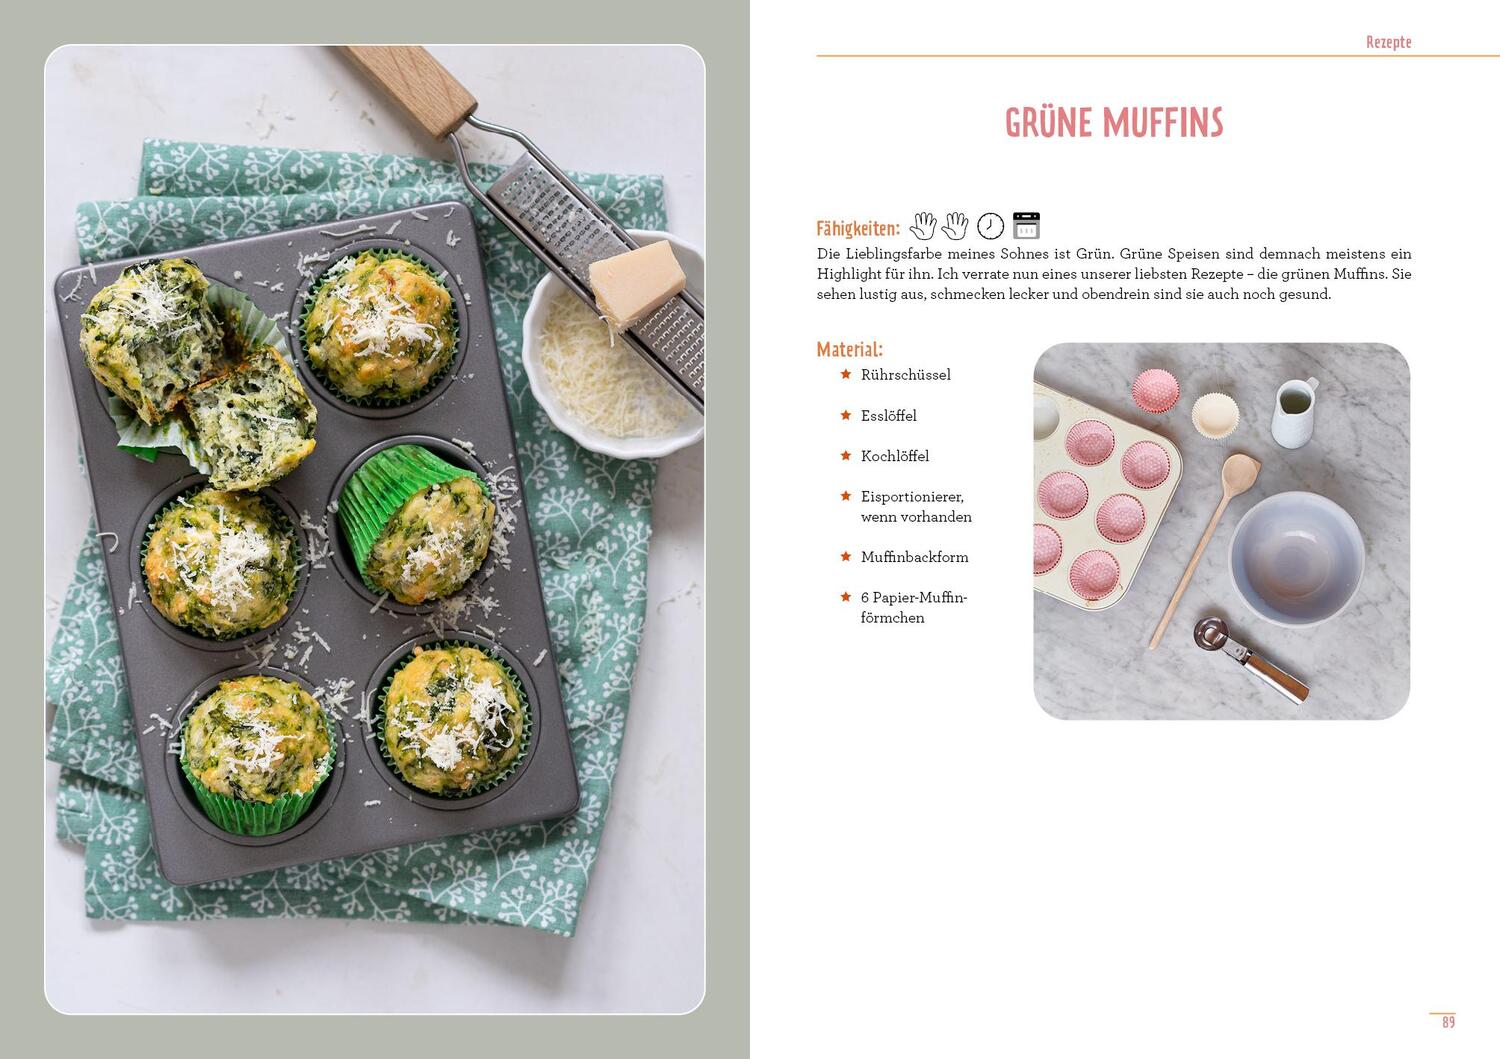 Bild: 9783742322050 | Montessori-Ideen für die Küche - Kochen mit Kindern | Julia Peneder